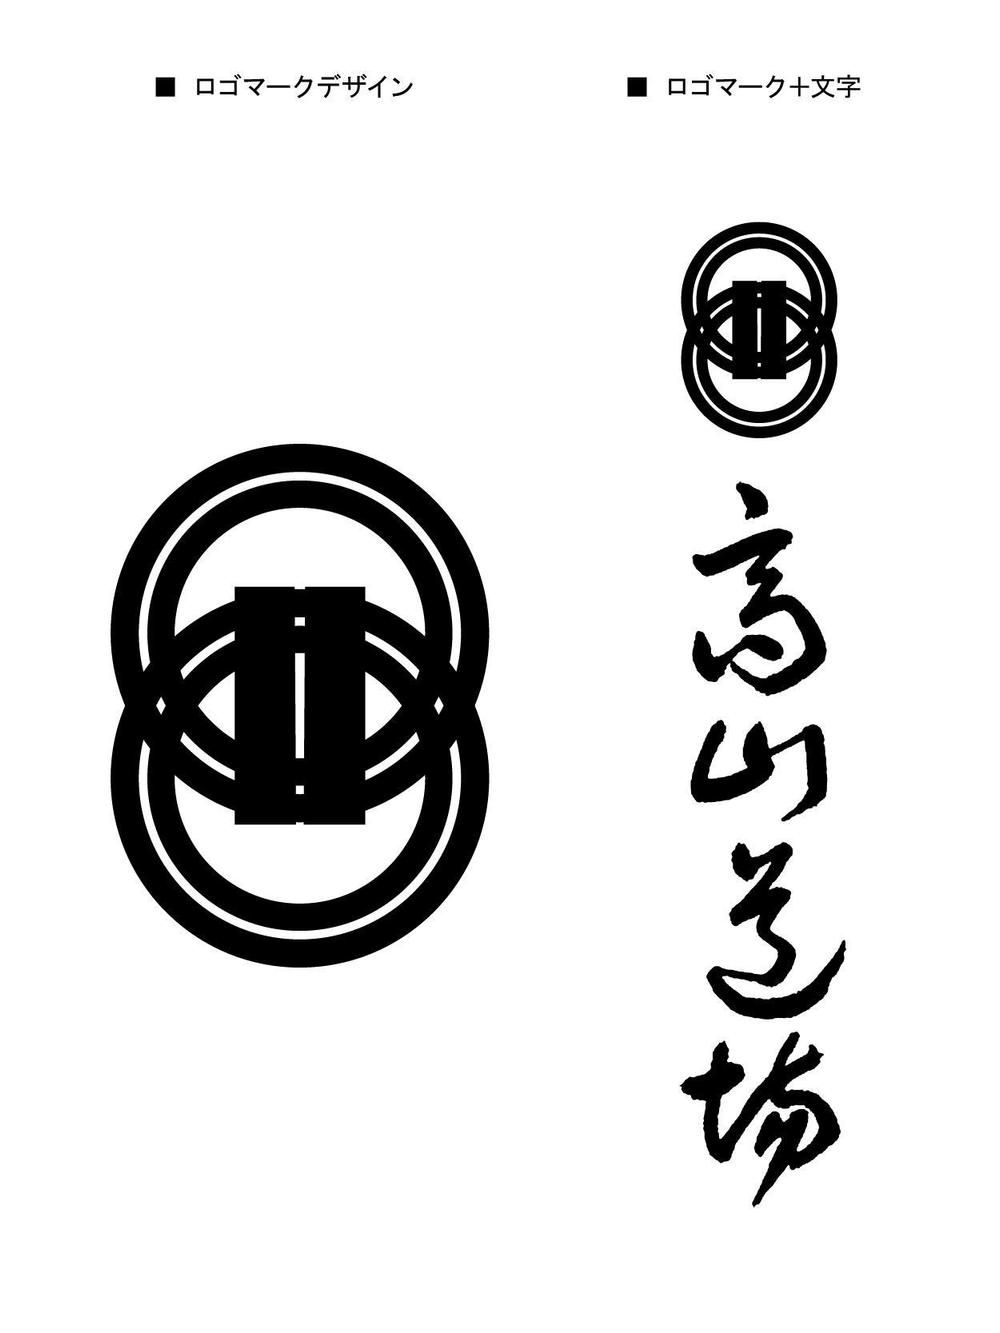 karate_2_logo.jpg